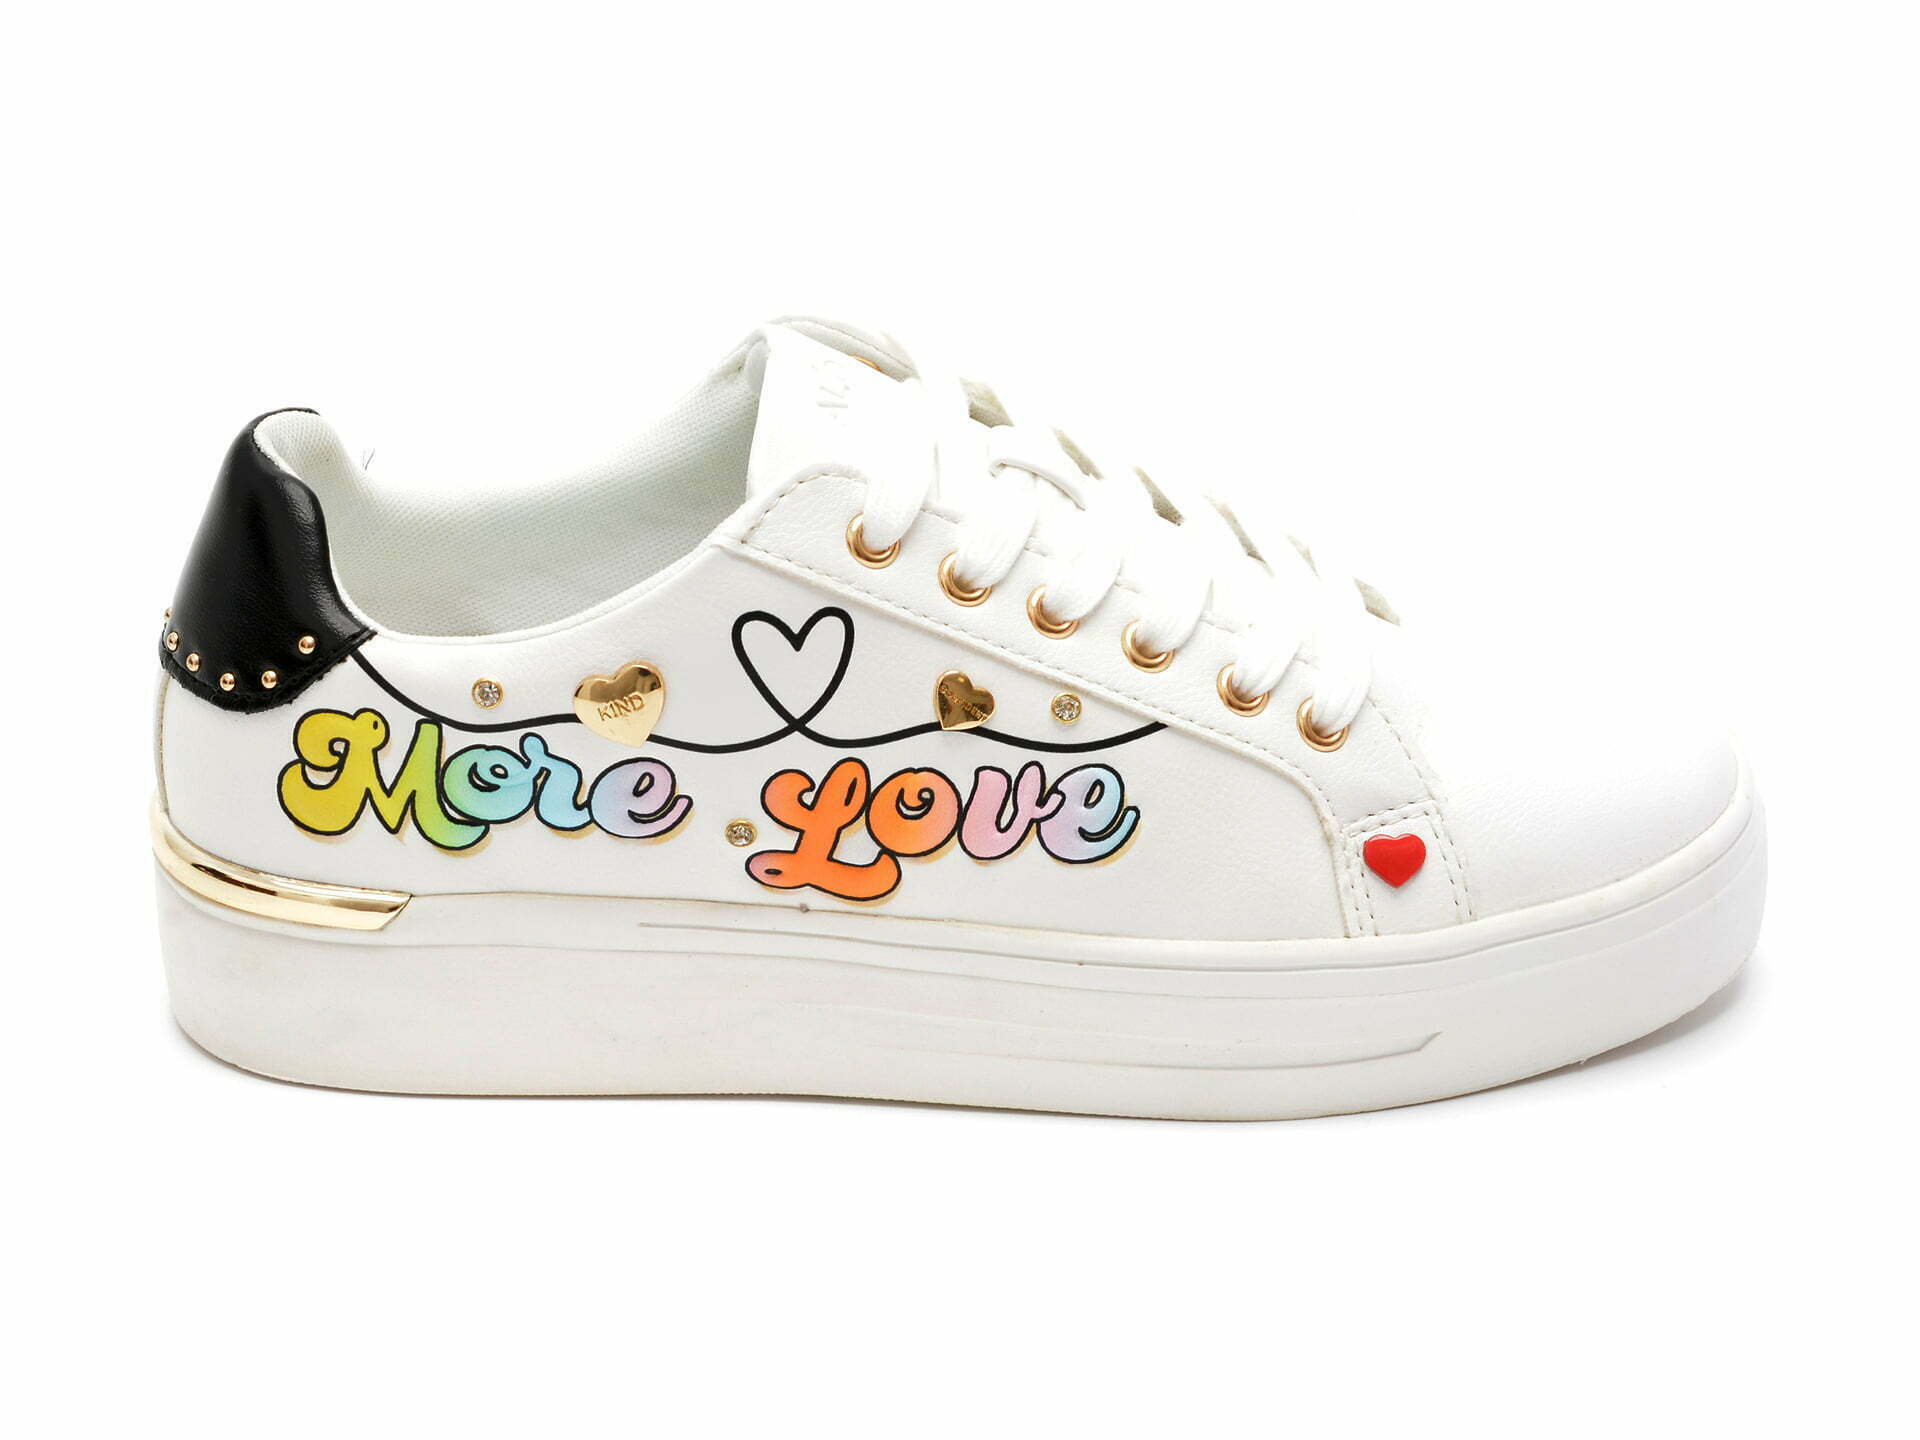 Comandă Încălțăminte Damă, la Reducere  Pantofi sport ALDO albi, LOVEMORE965, din piele ecologica Branduri de top ✓